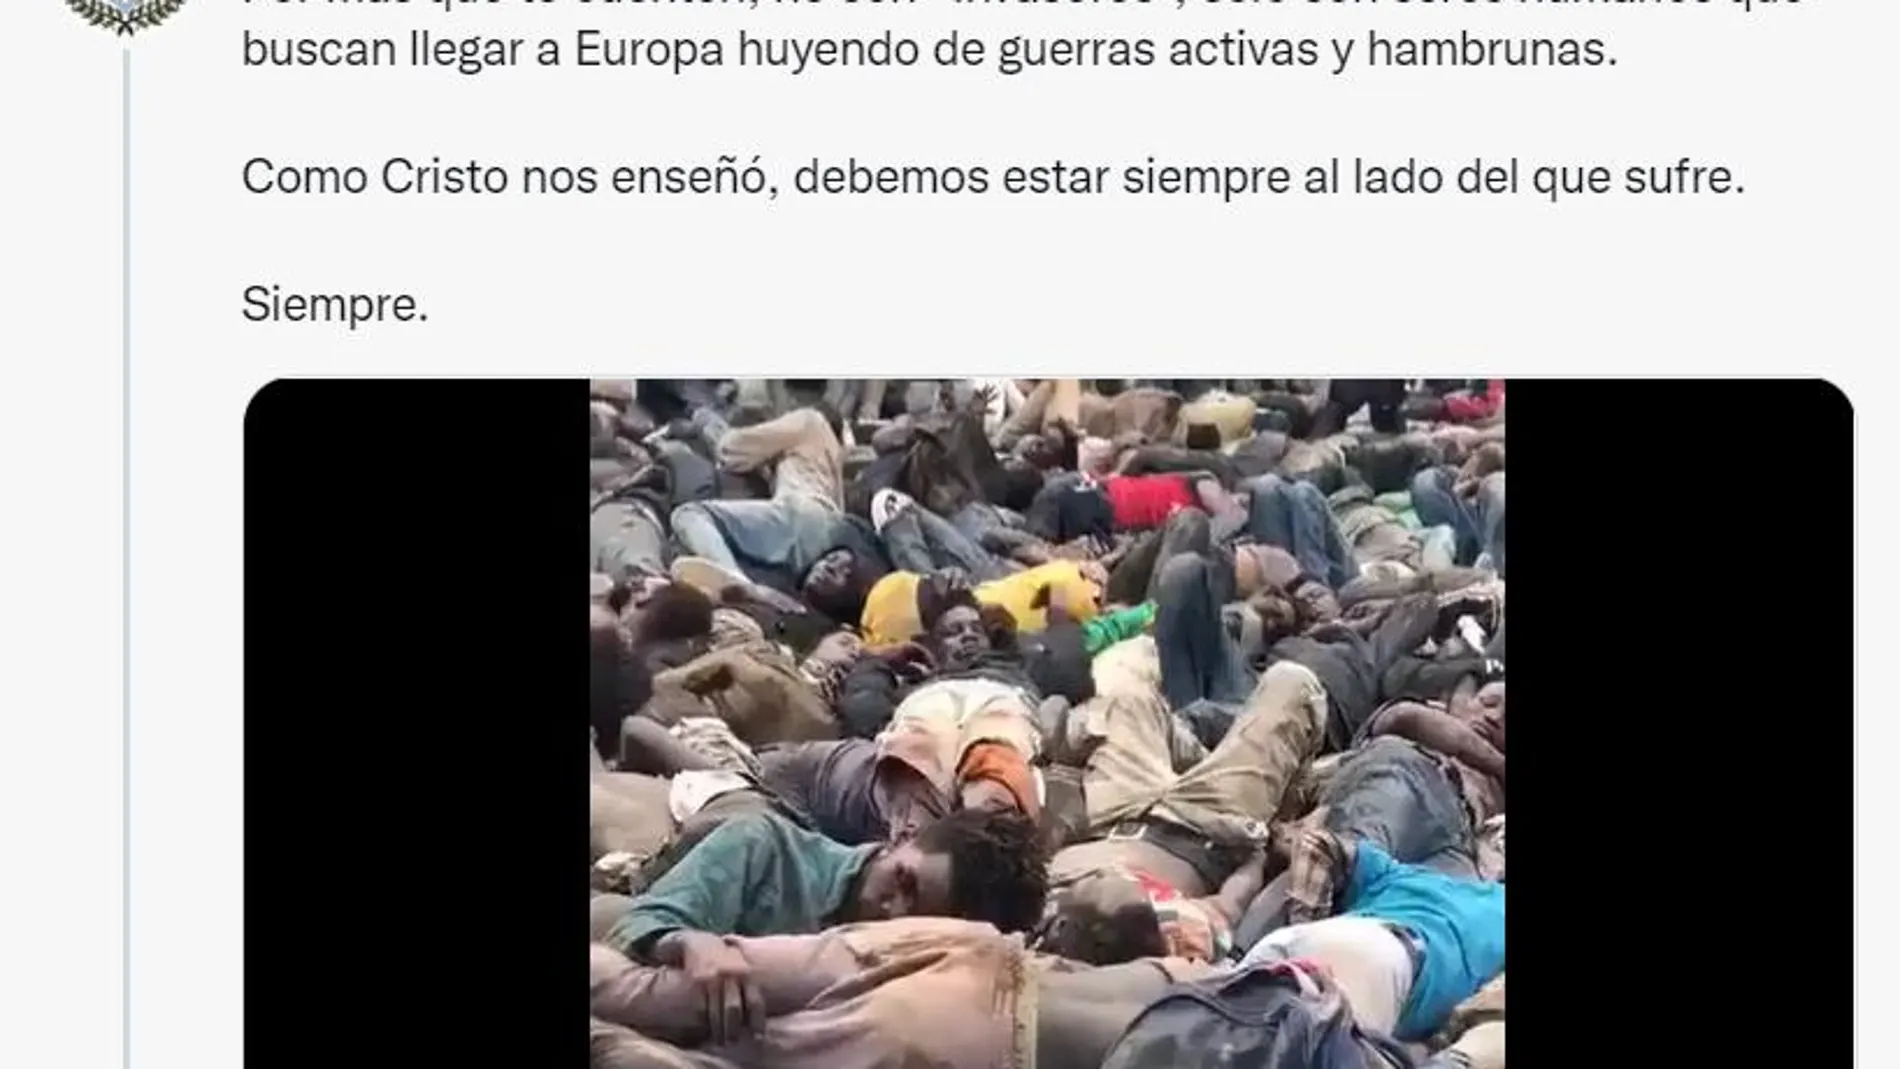 Este es el mensaje de la hermandad tras la tragedia de Melilla, junto a una imagen de los cuerpos de las víctimas agolpados en el suelo